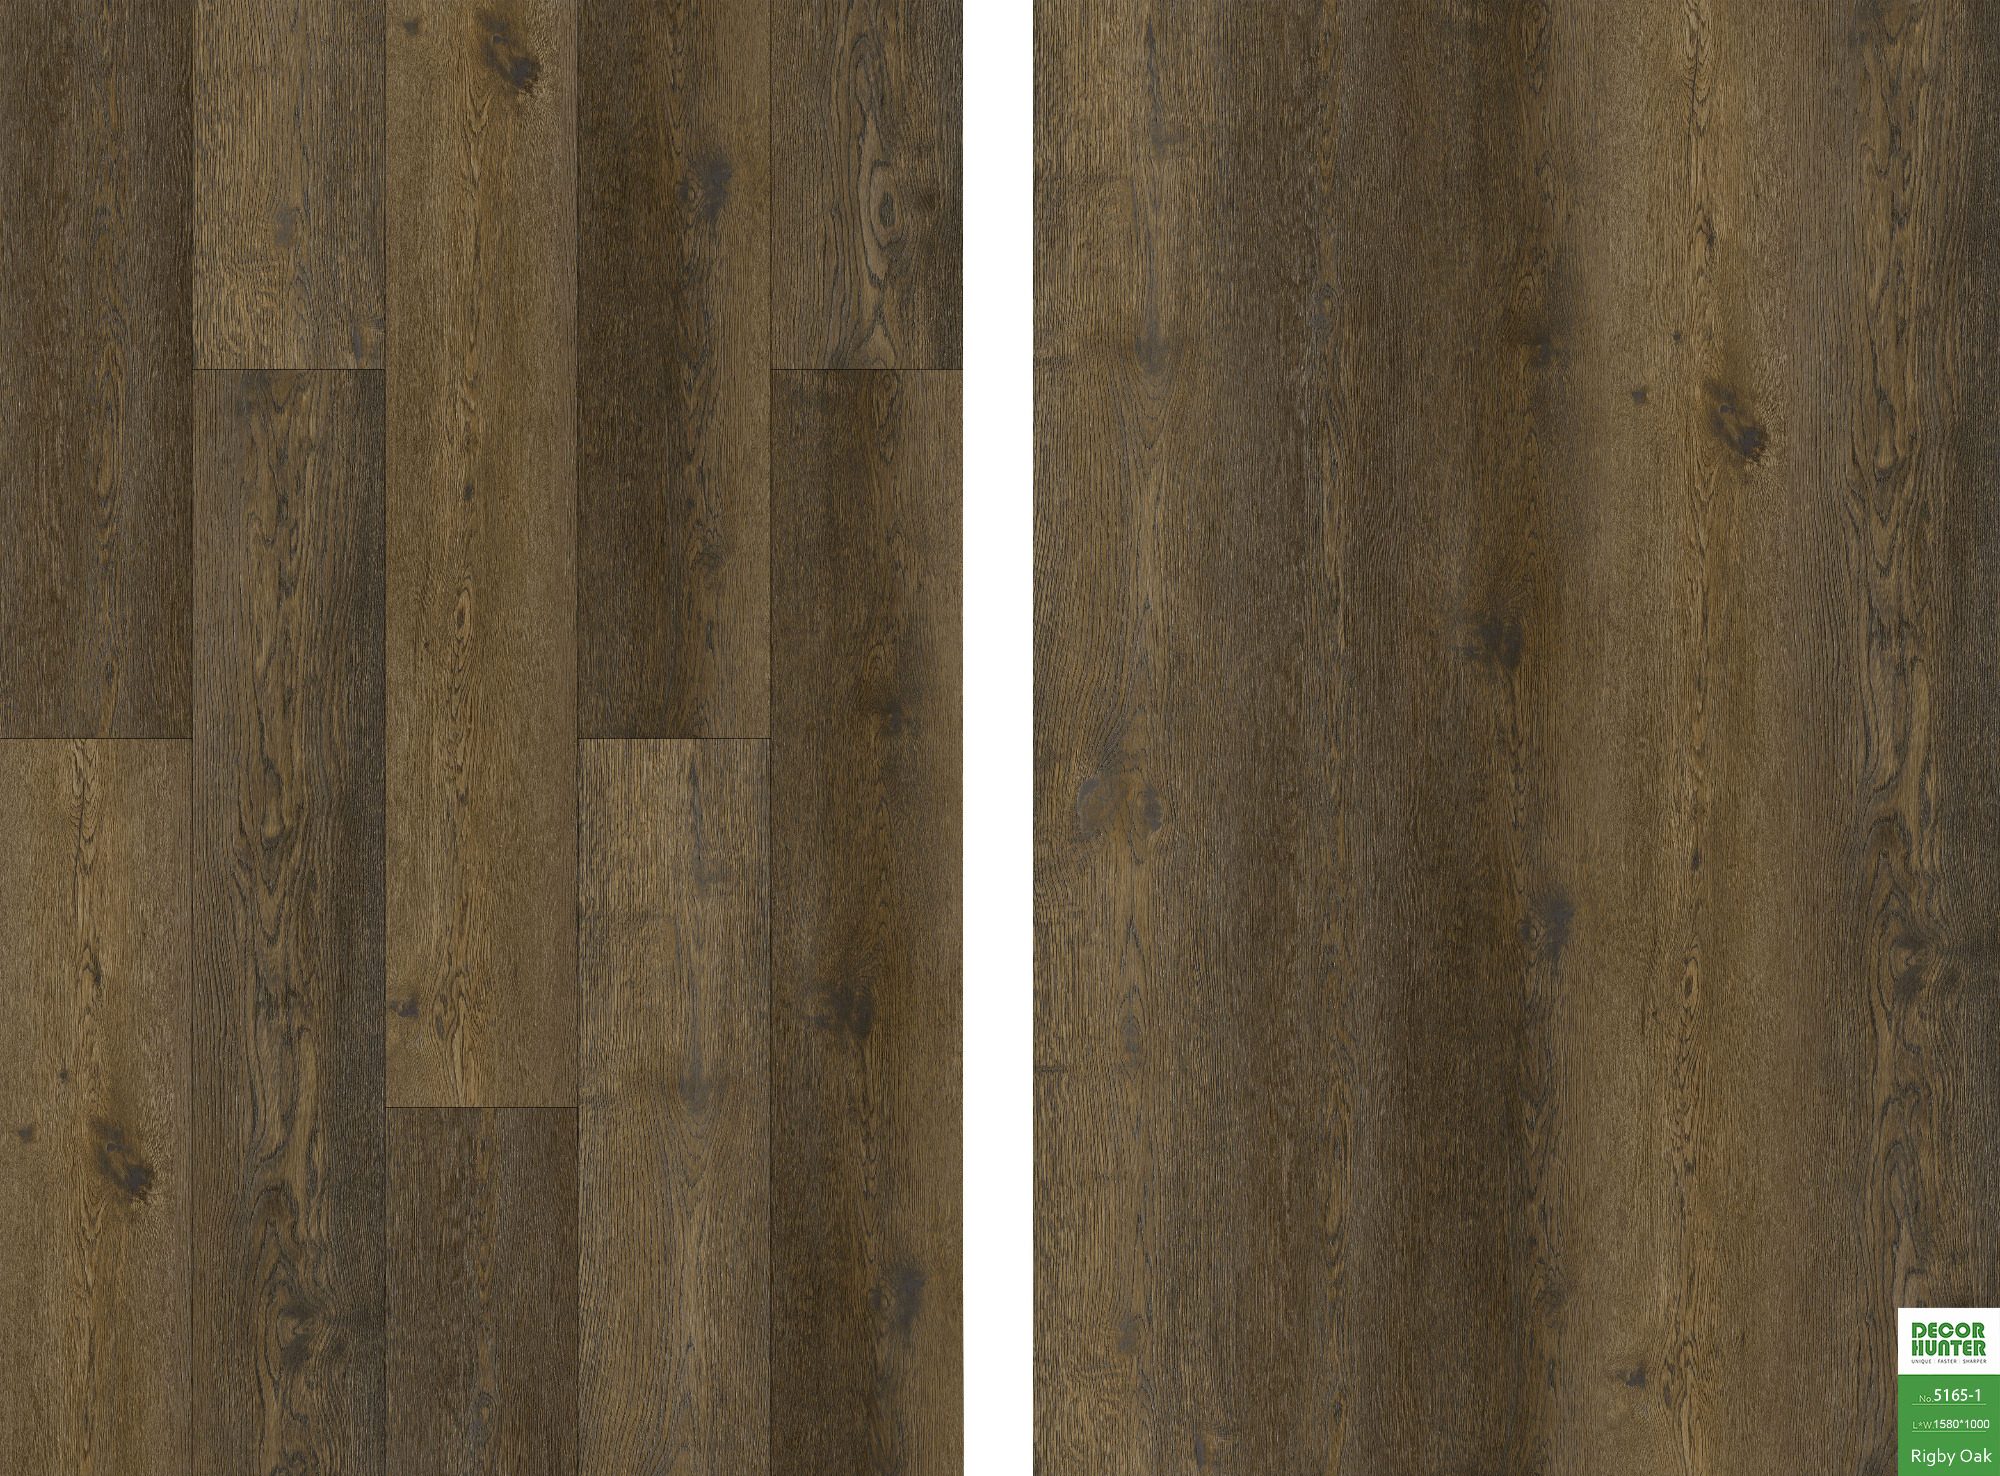 5165 Rigby Oak｜Wood Grain Vinyl Flooring Film